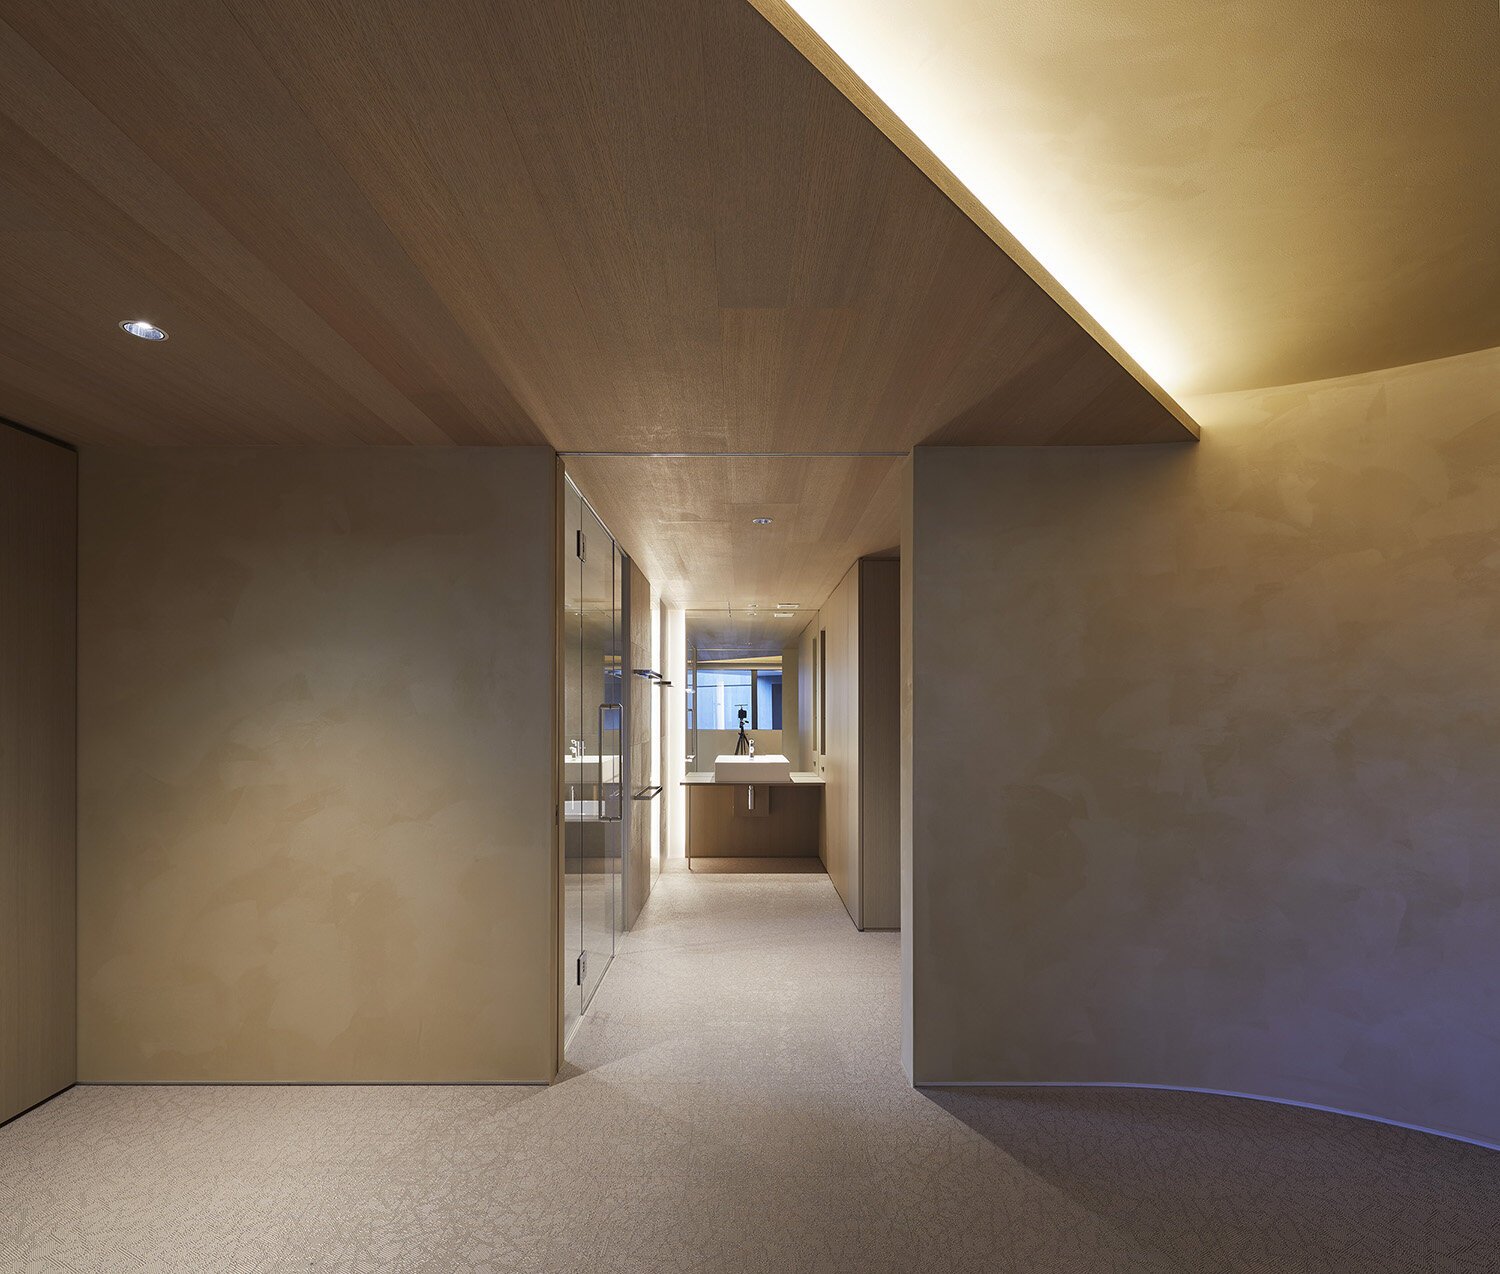  建築家 sinatoシナトの大野力が設計した住宅Shoto S。3階居室スペースまわりのインテリアデザイン 